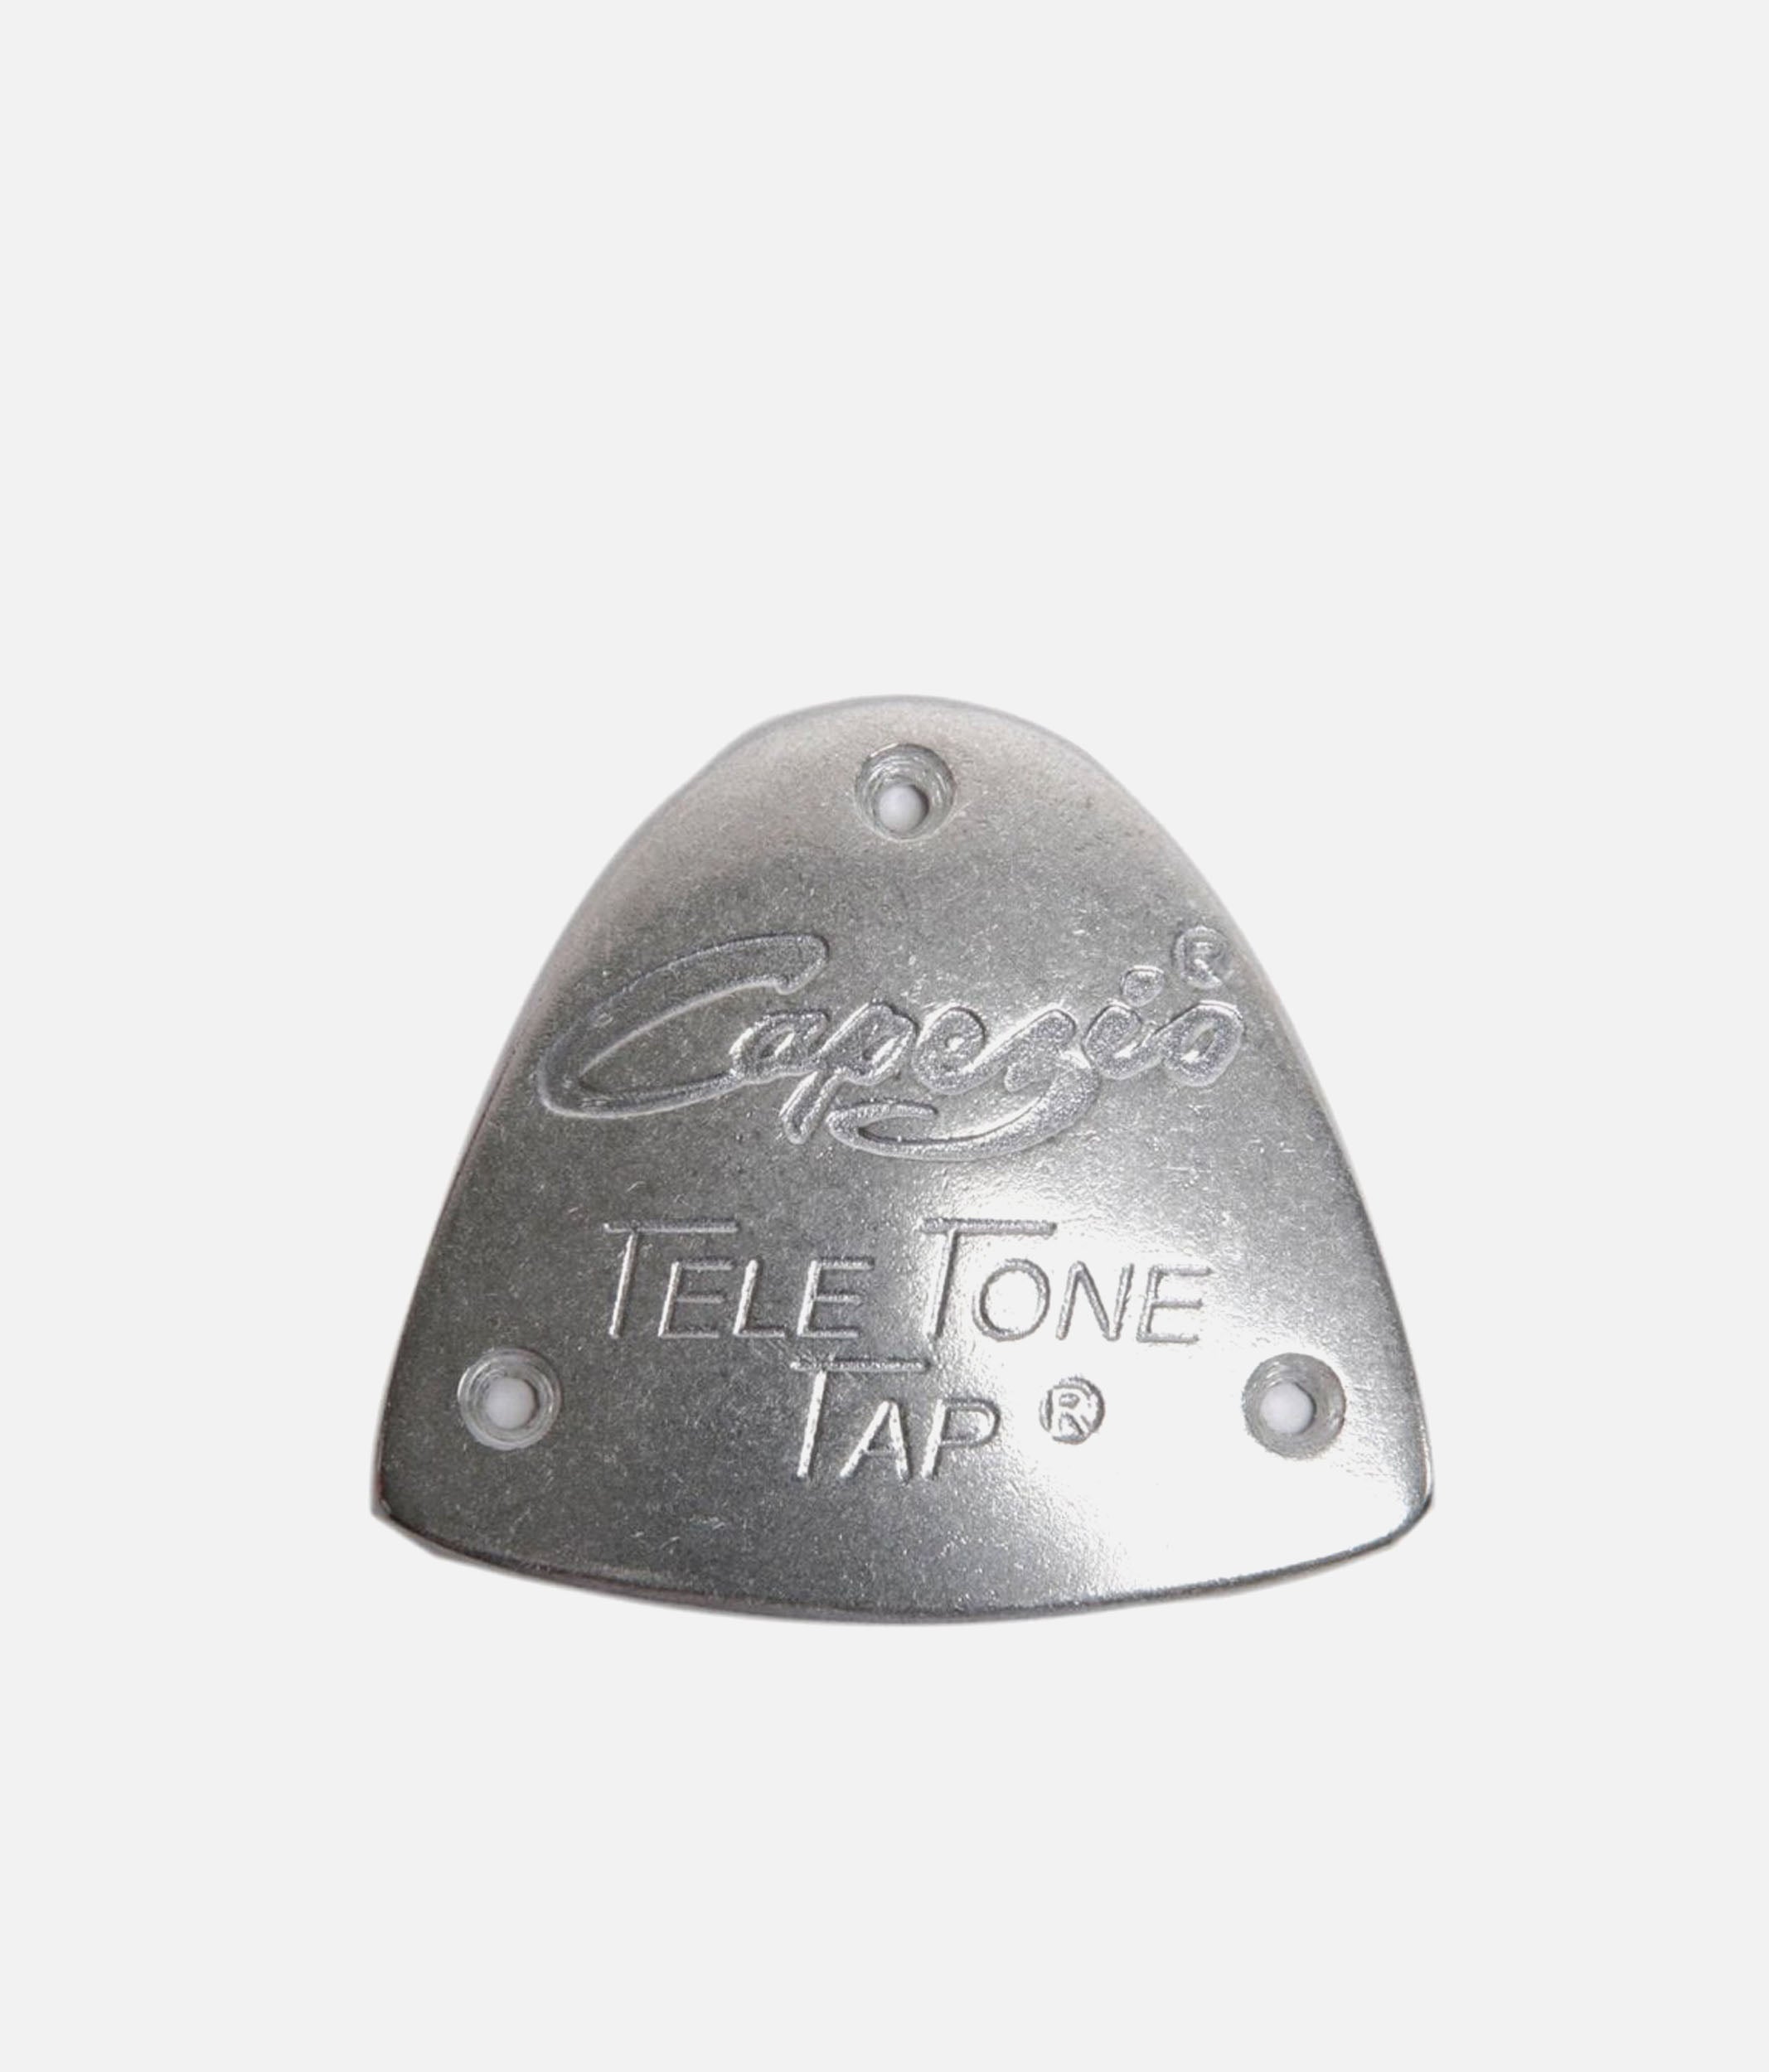 Tele Tone® Toe Taps